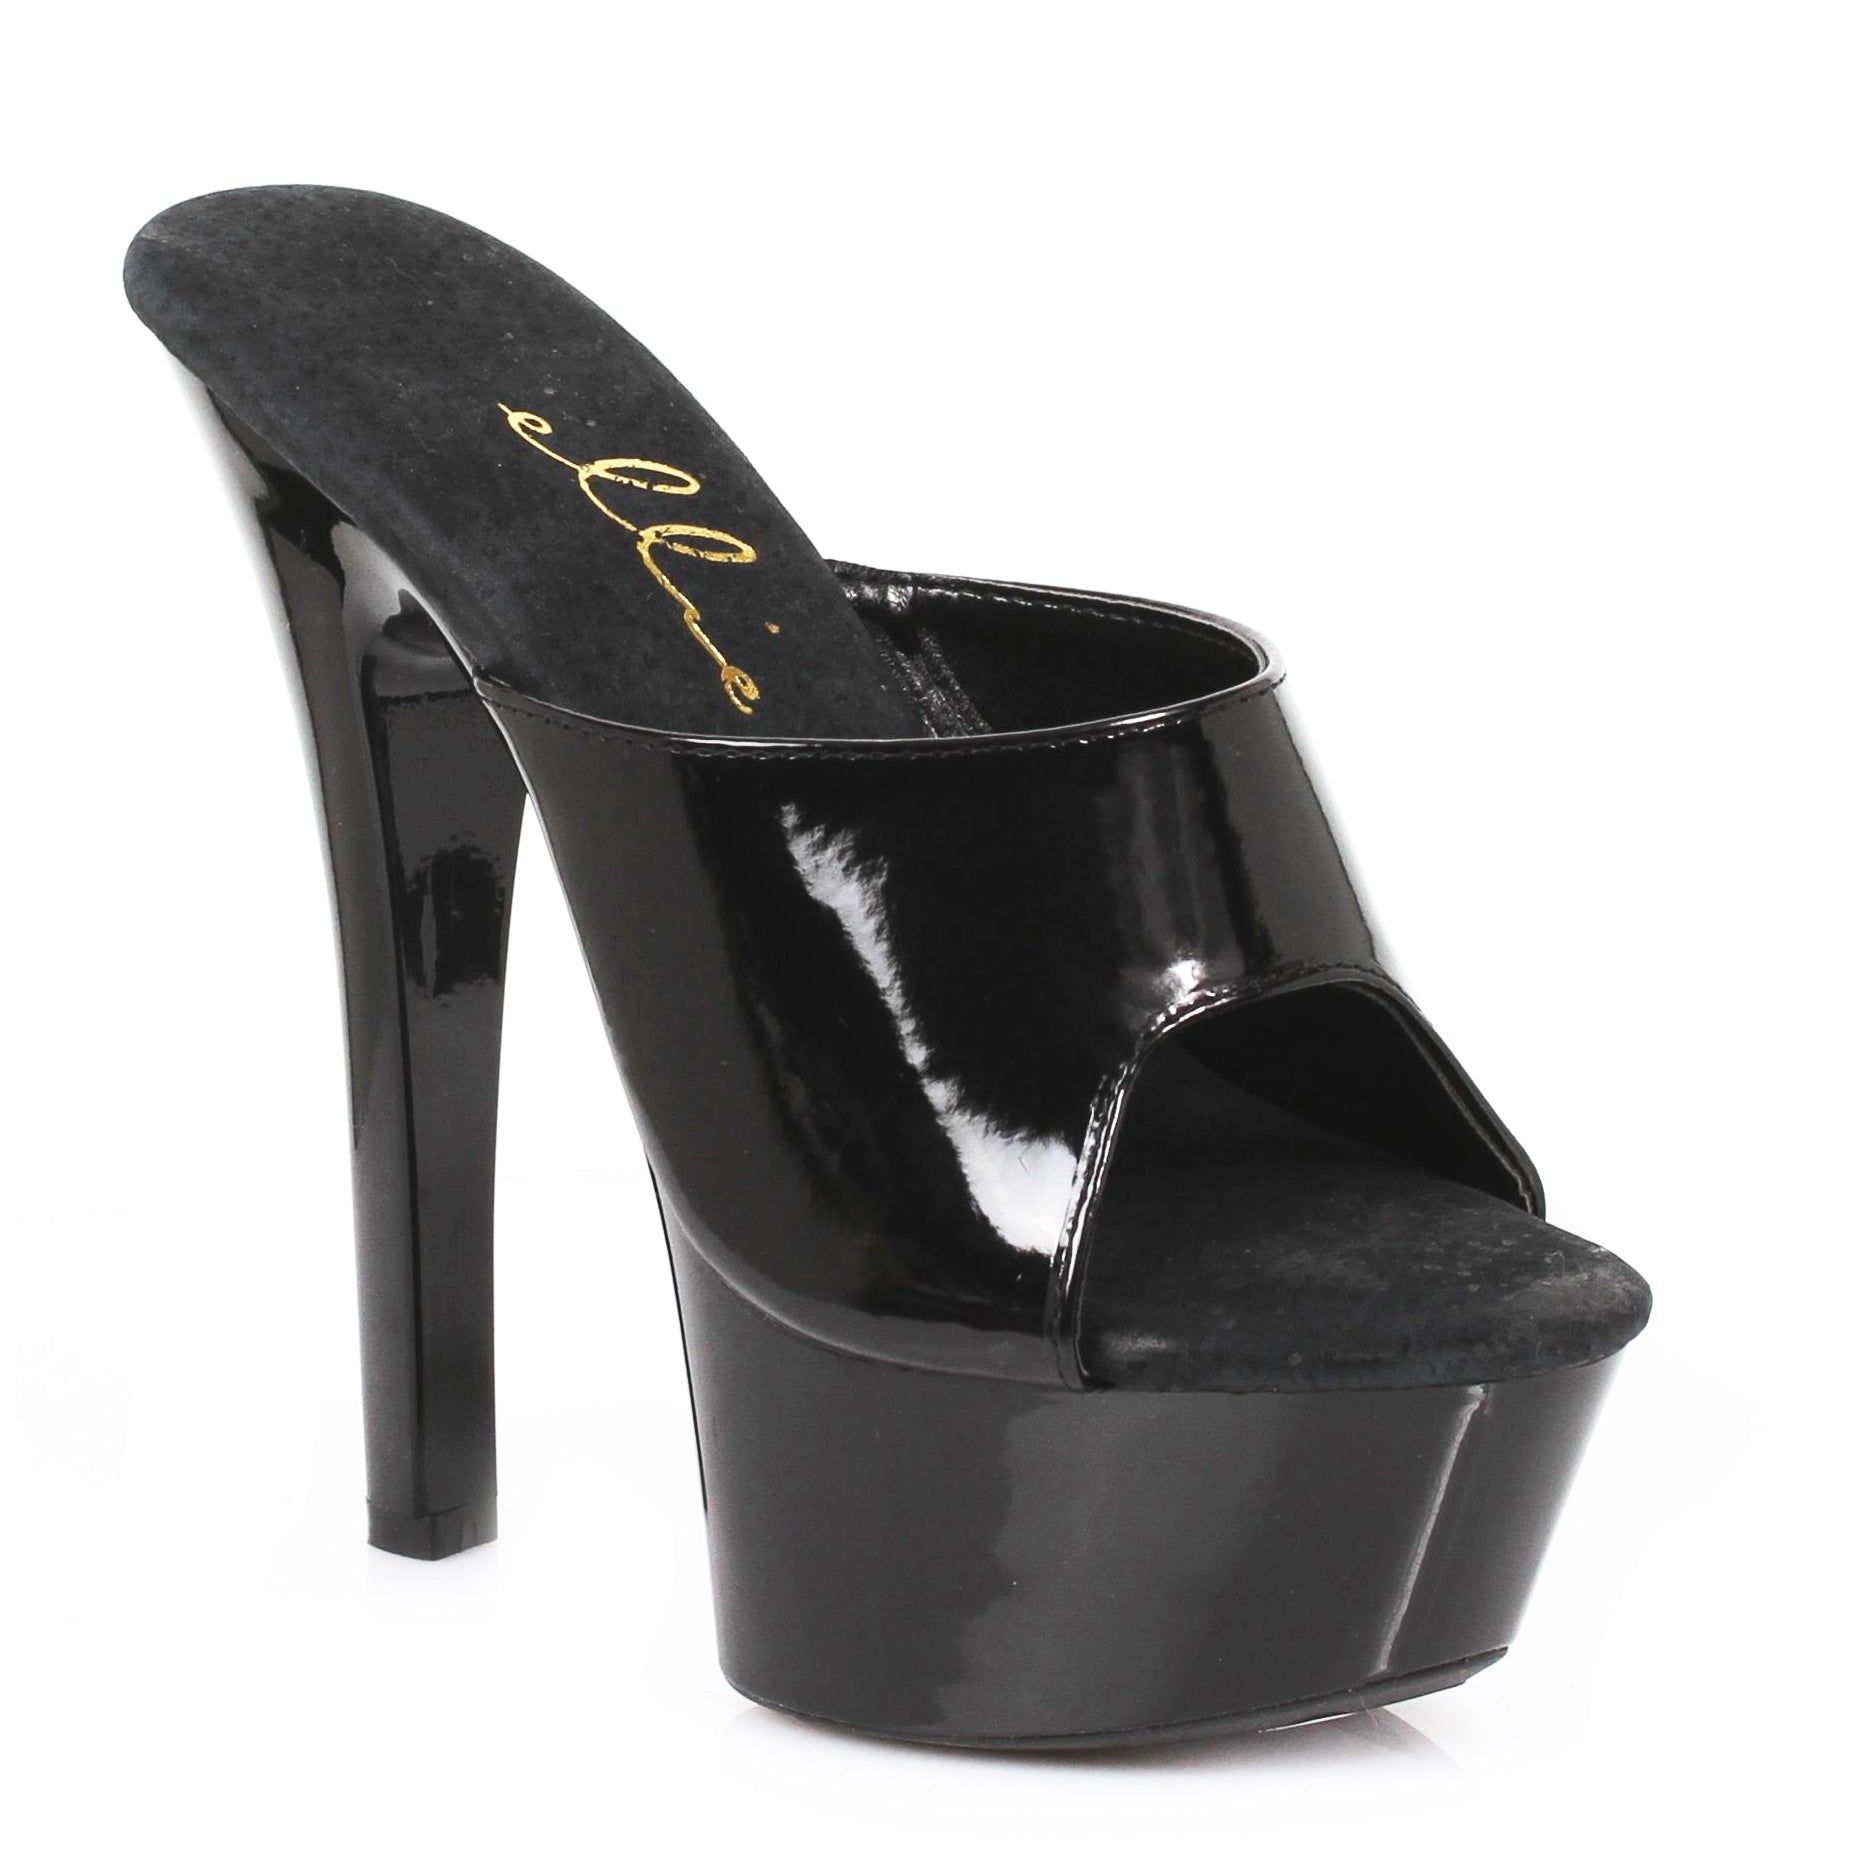 601-VANITY Ellie Shoes 6" Heel Mule. COMPETITIO EXTENDED S 6 INCH HEEL